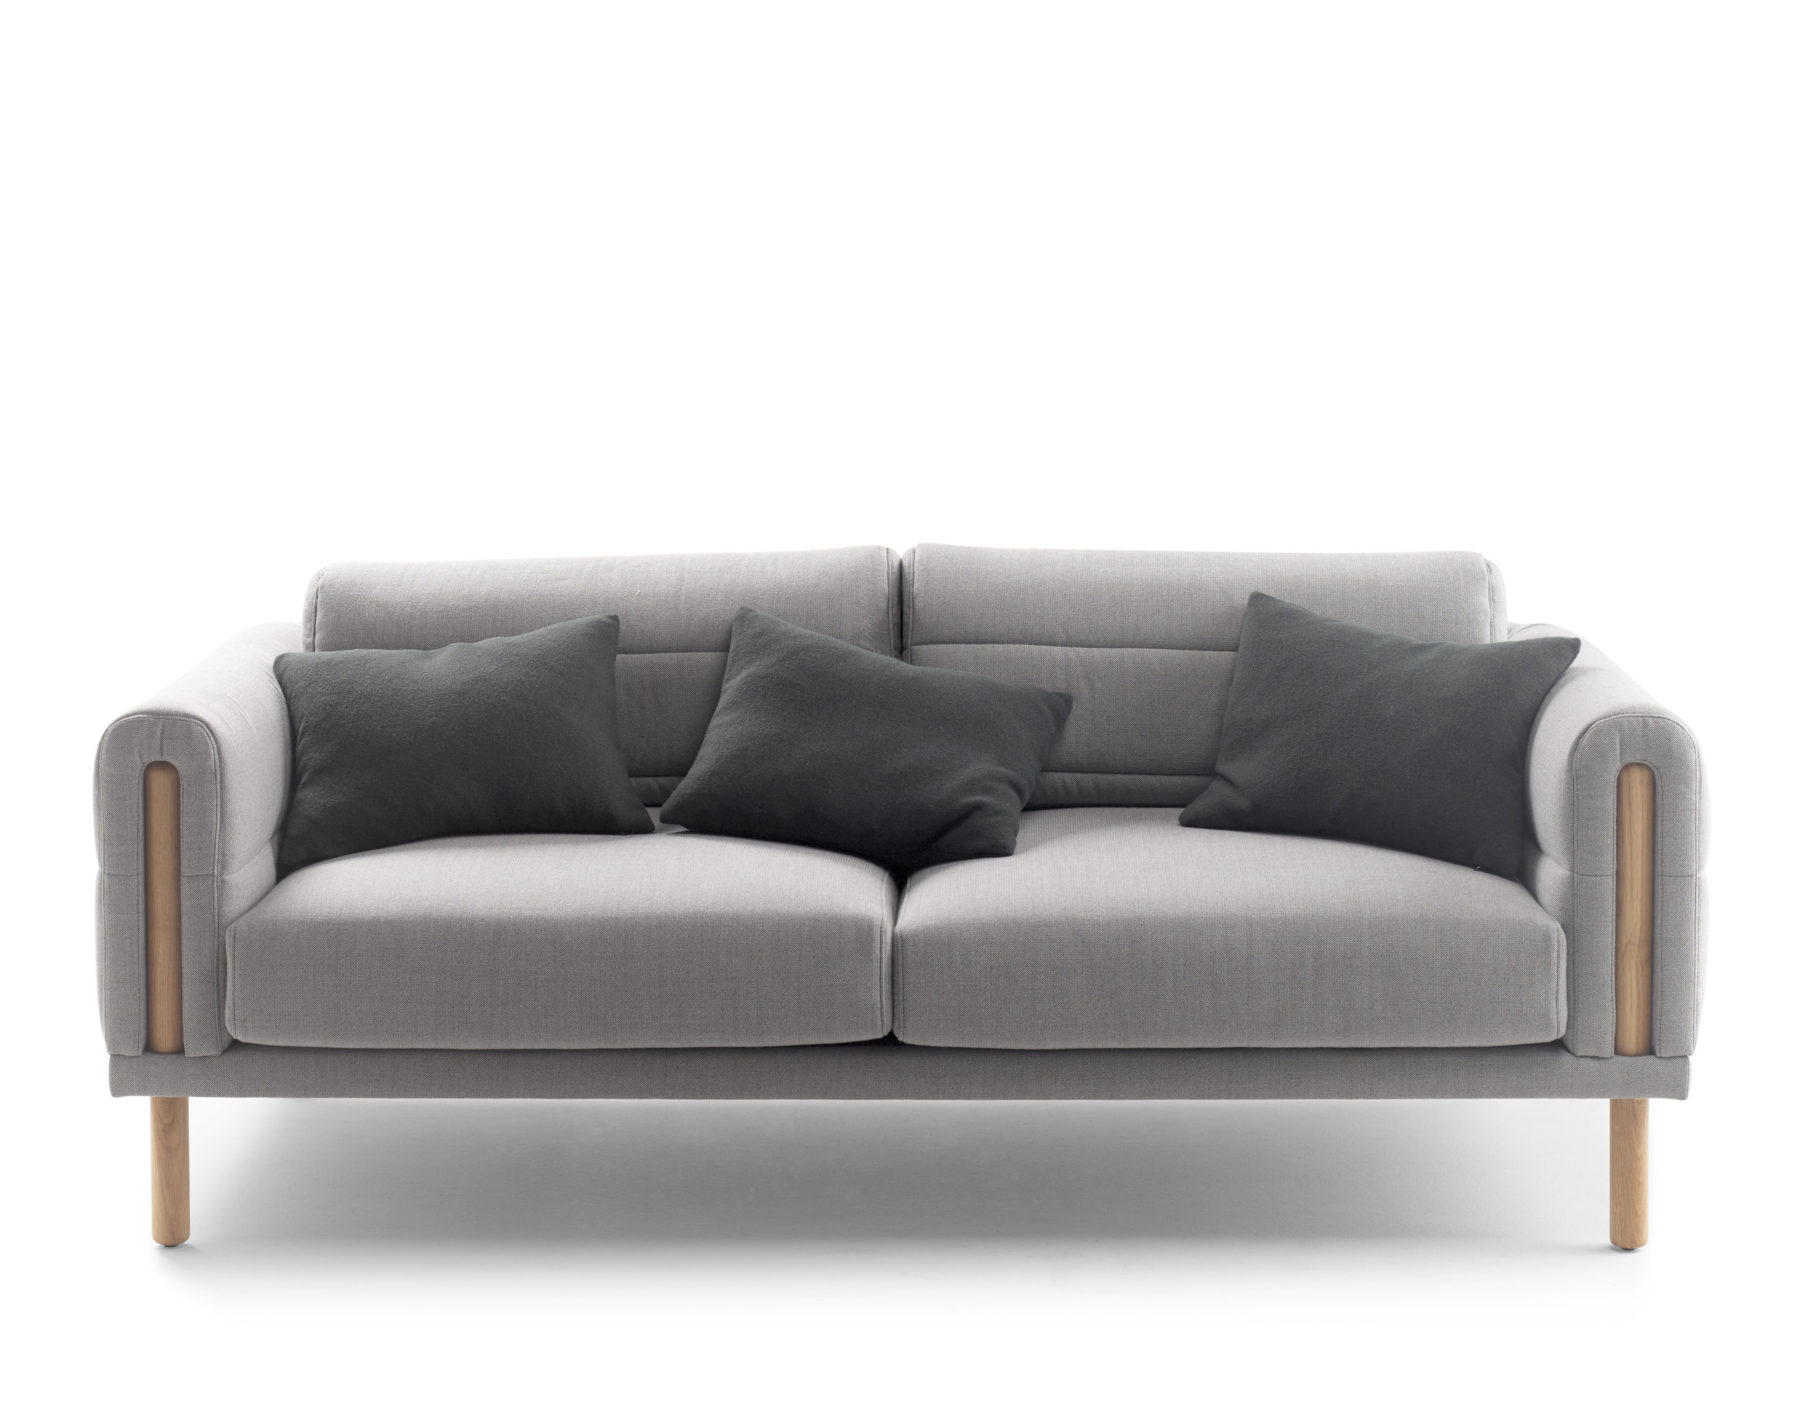 Nueva colección de sofás Abric, creada por Silvia Ceñal para la francesa Bosc